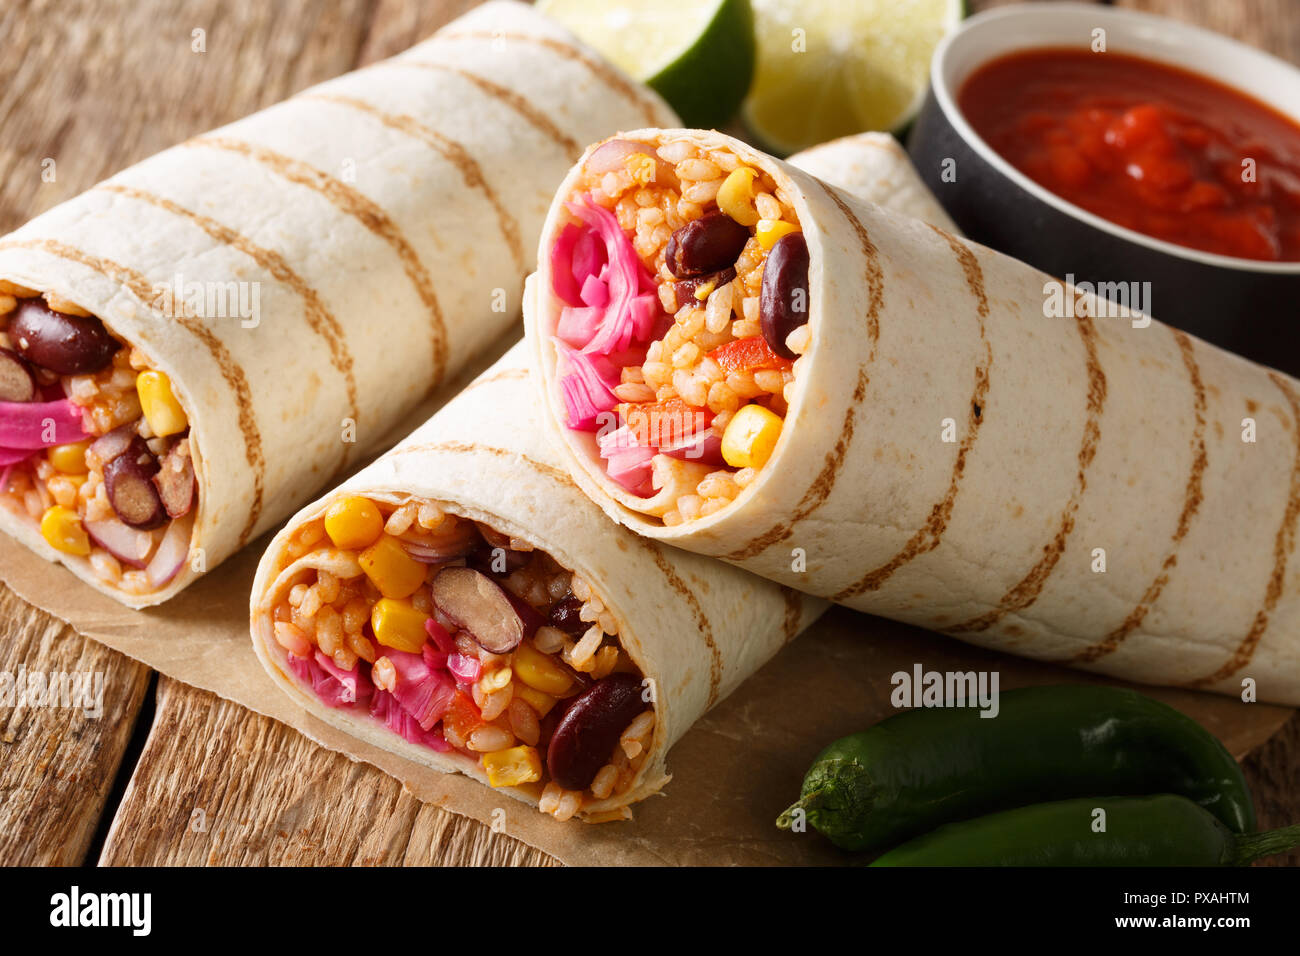 Il fast food grigliate di veggie burrito con riso e verdure vicino sul tavolo. orizzontale, stile rustico Foto Stock